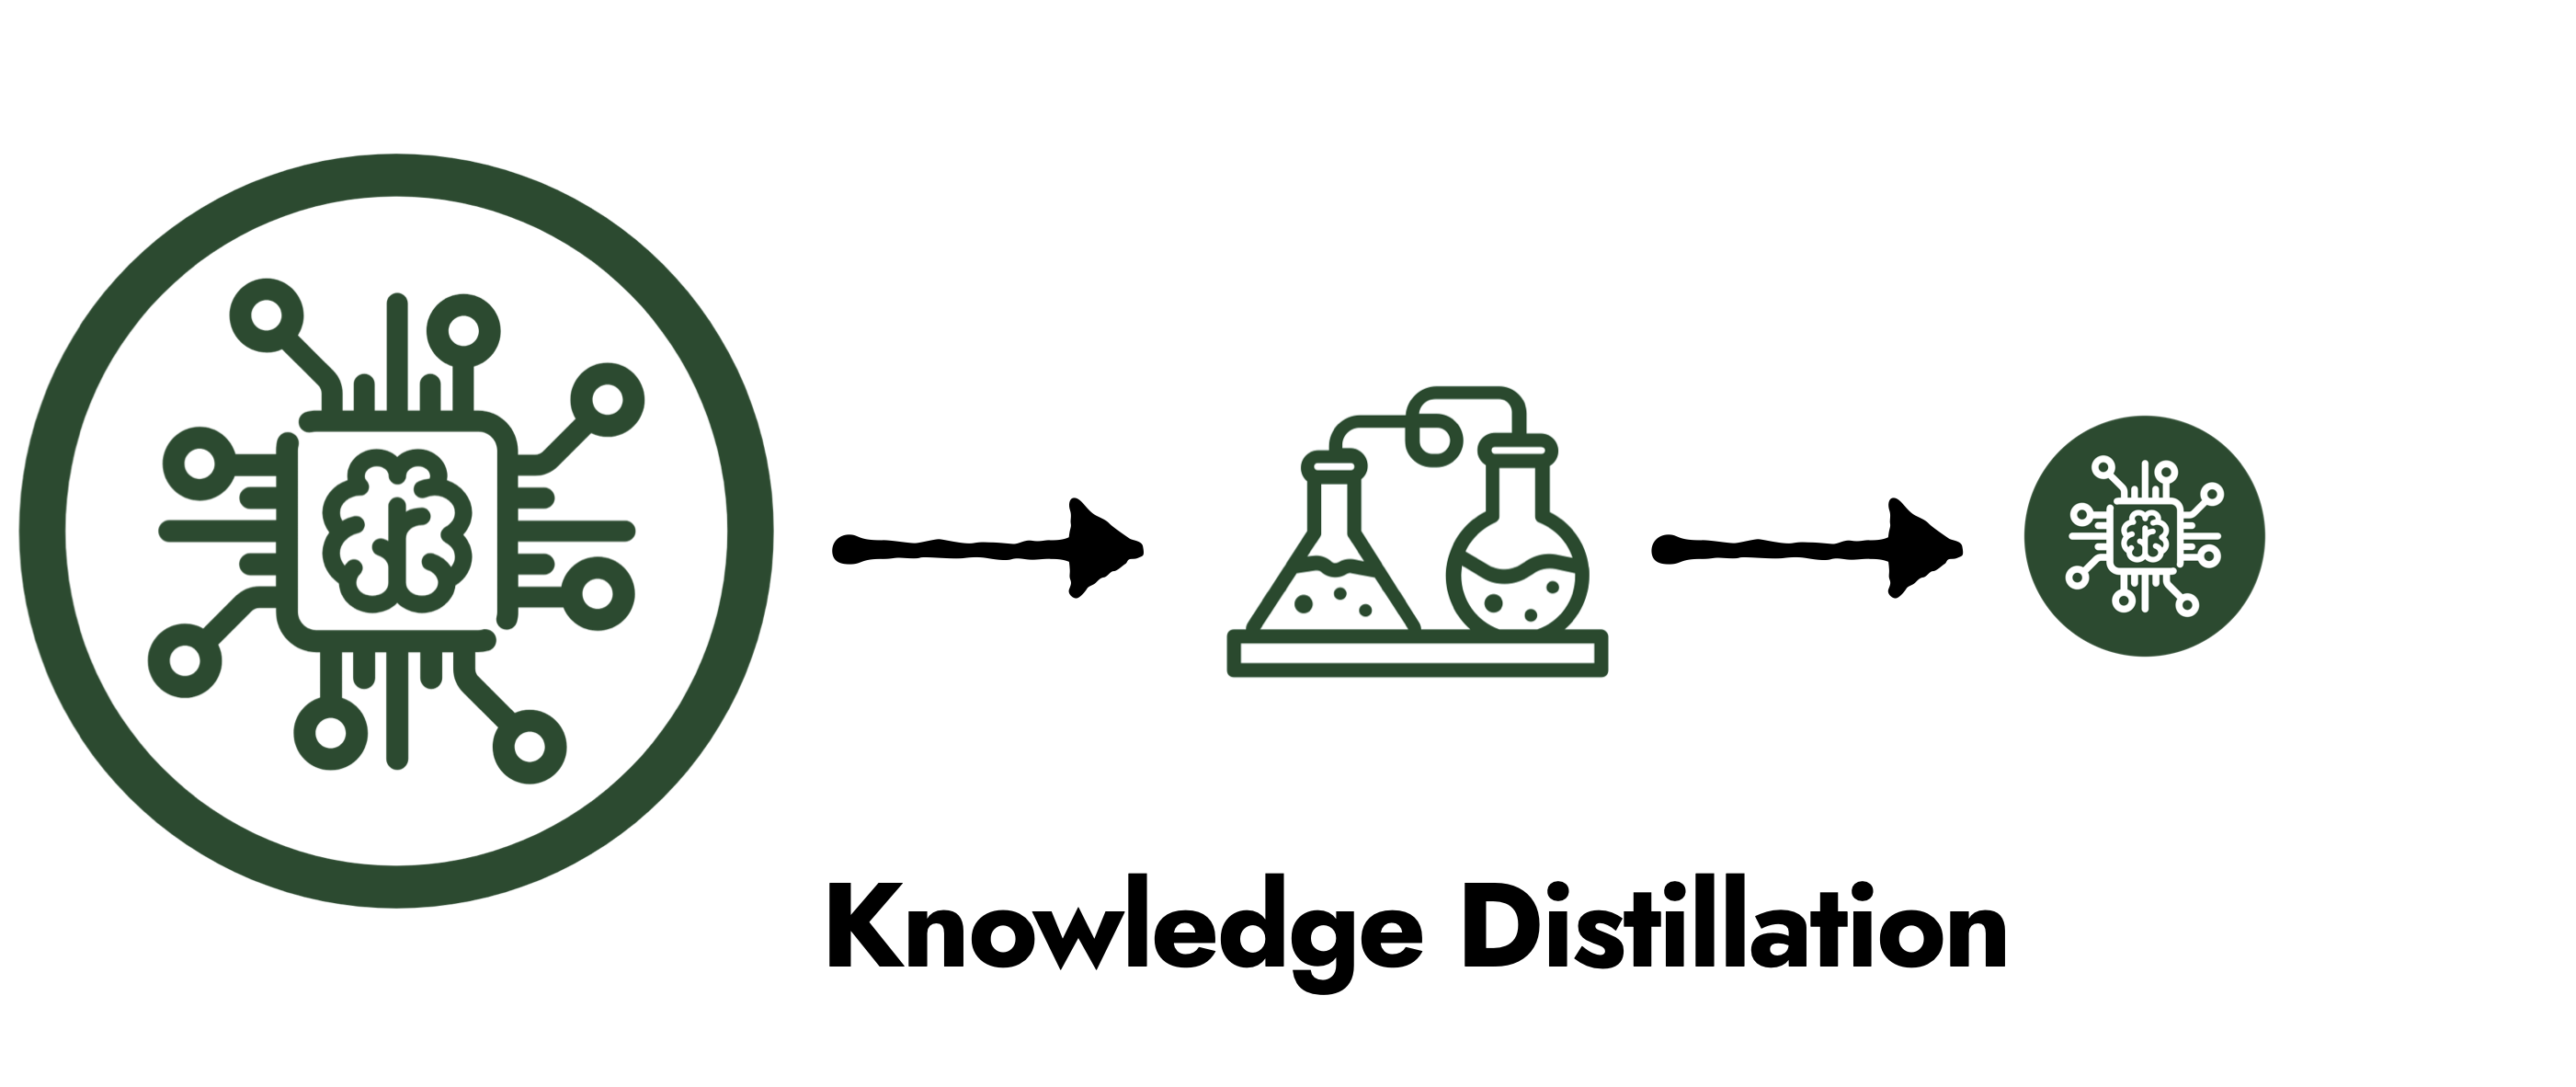 Knowledge Distillation